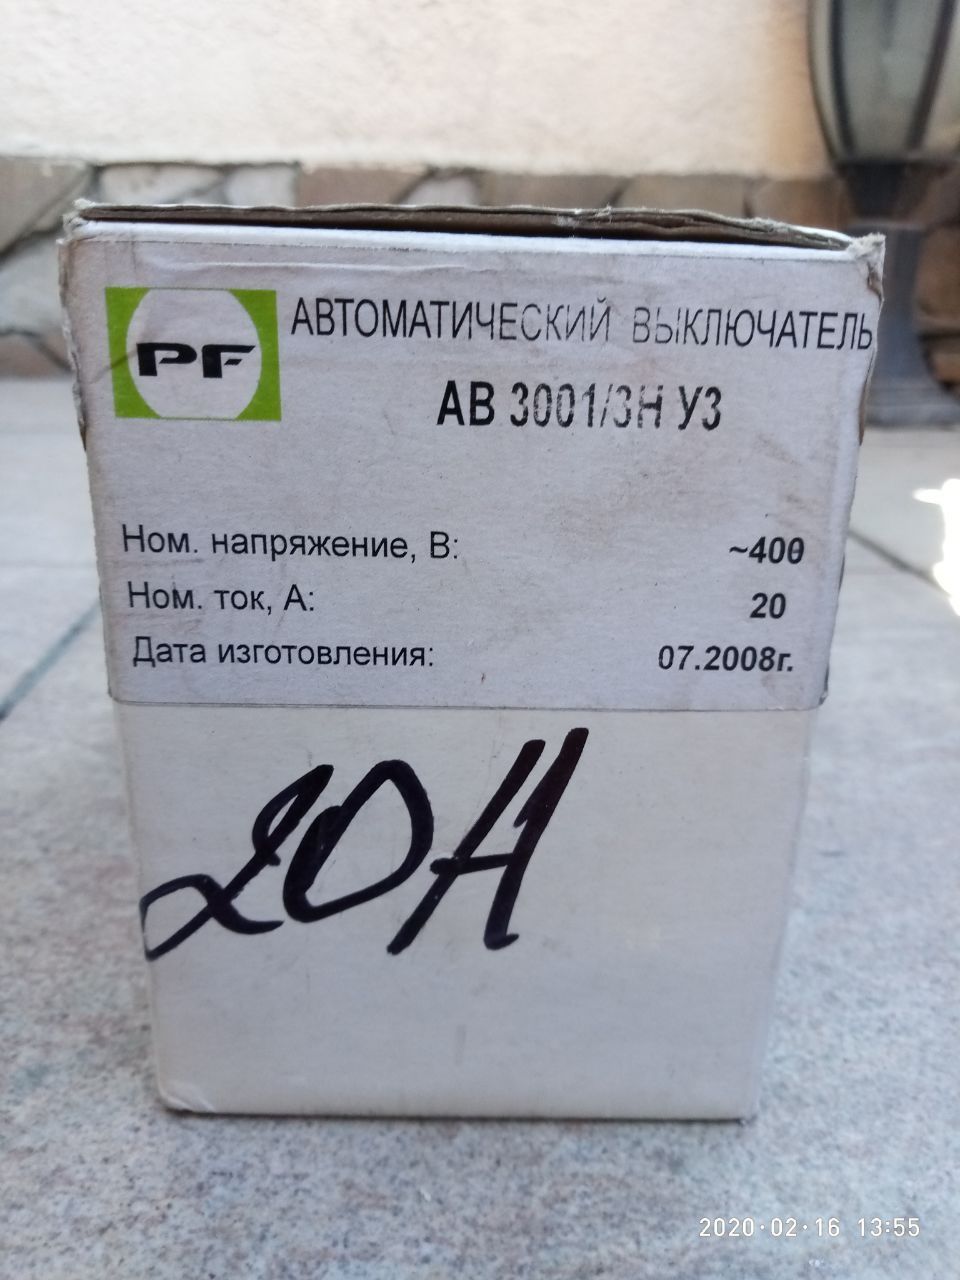 Автоматический выключатель АВ3001/3Н 20А Промфактор